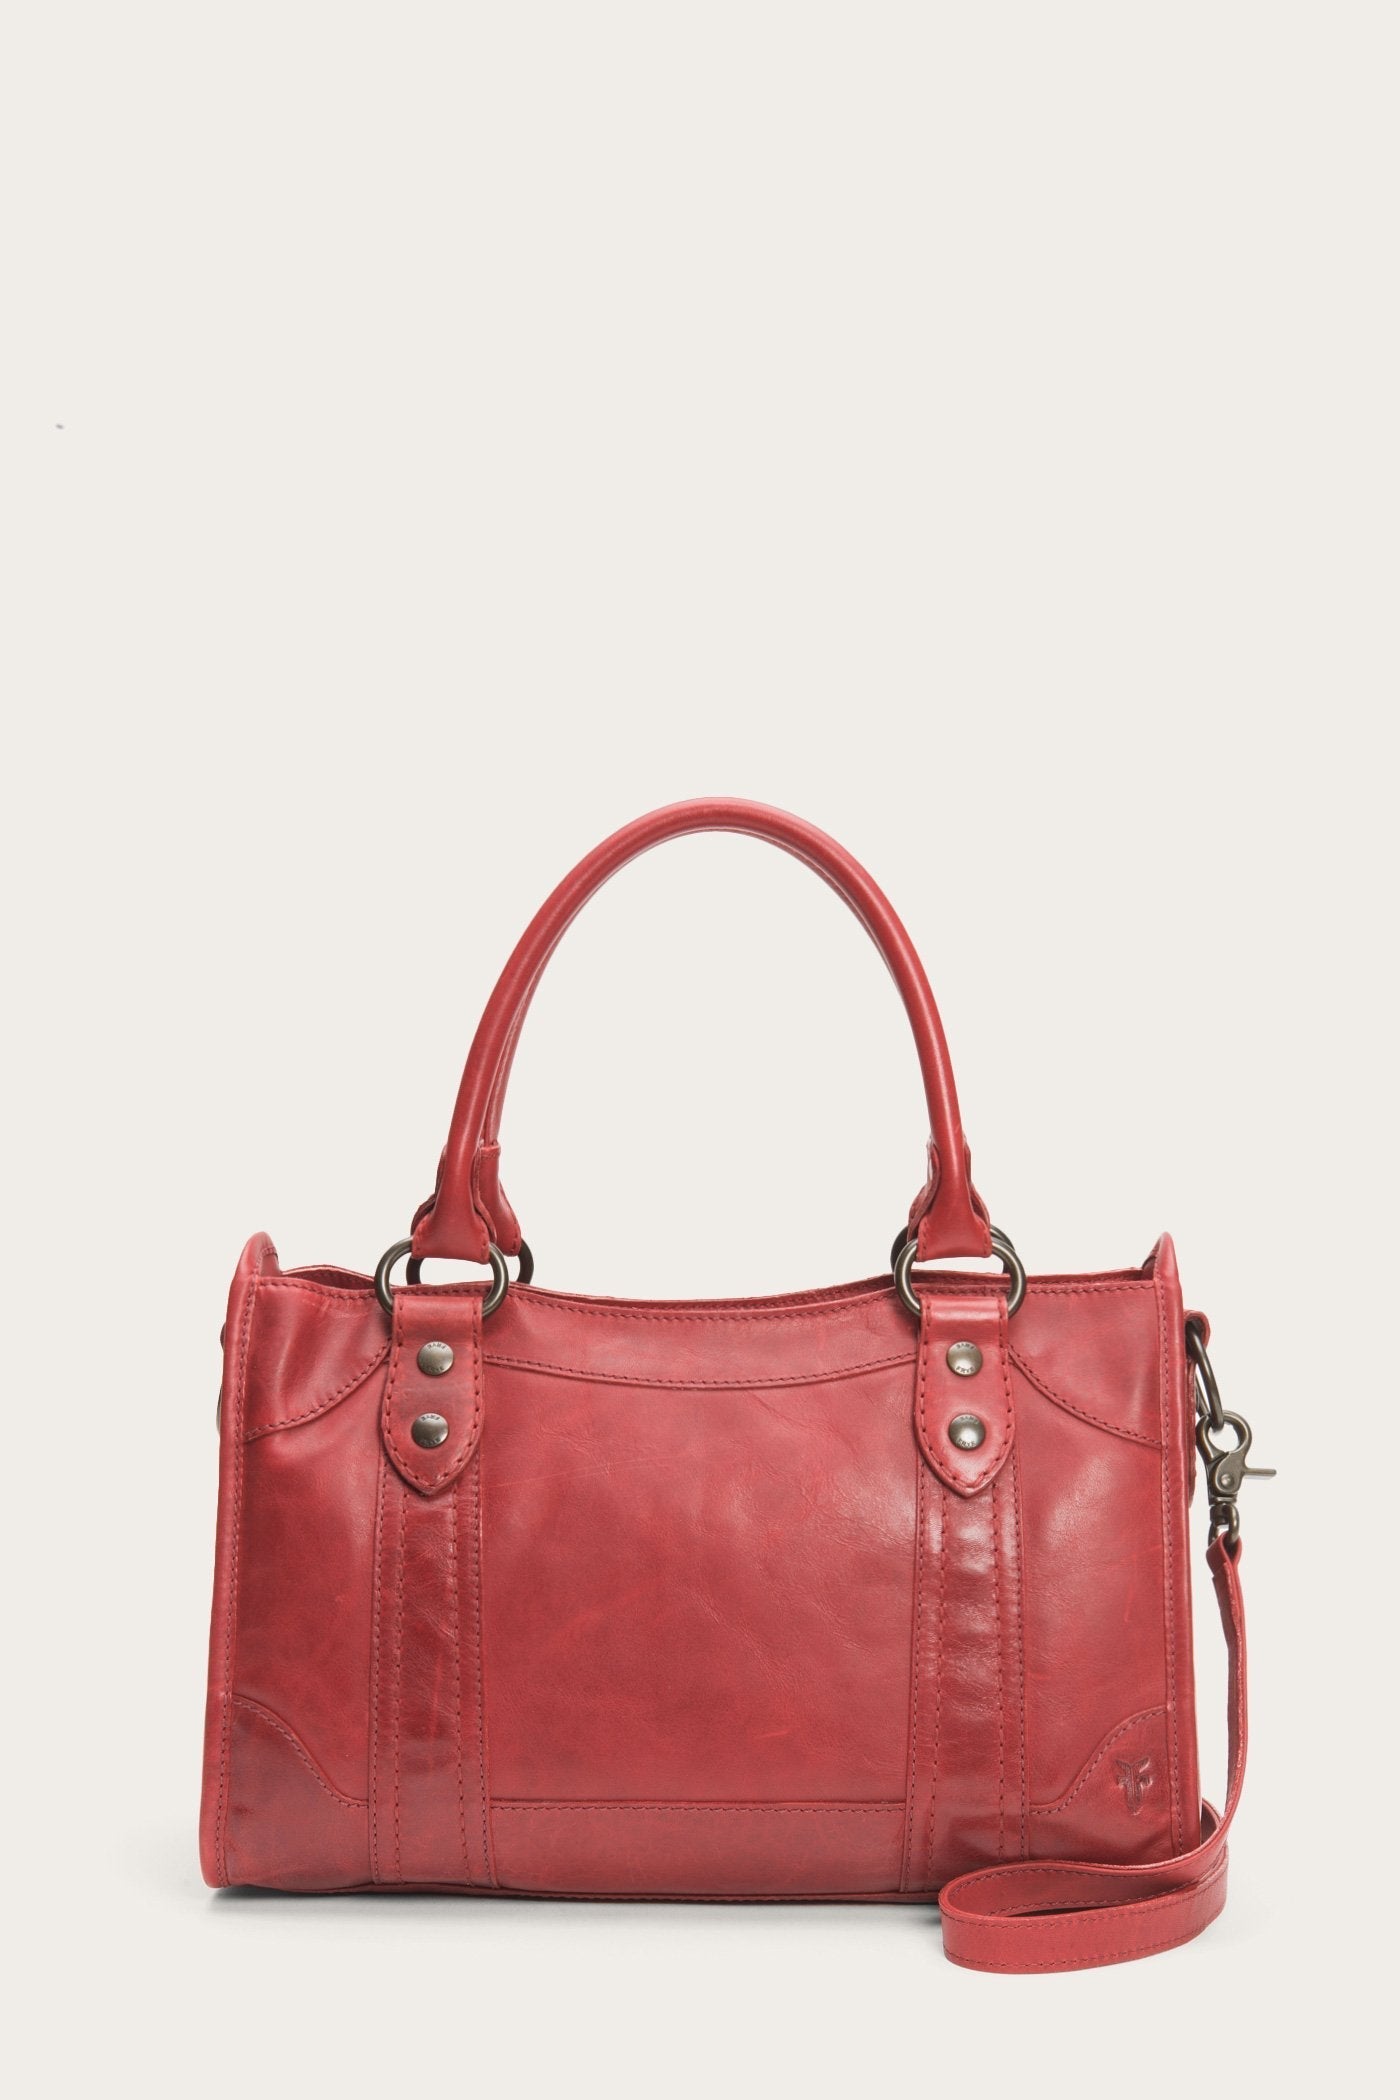 Buy Women Shoulder bag Pouch Satchel bag Dumpling Handbag Hobo bag, Beige,  Small at Amazon.in